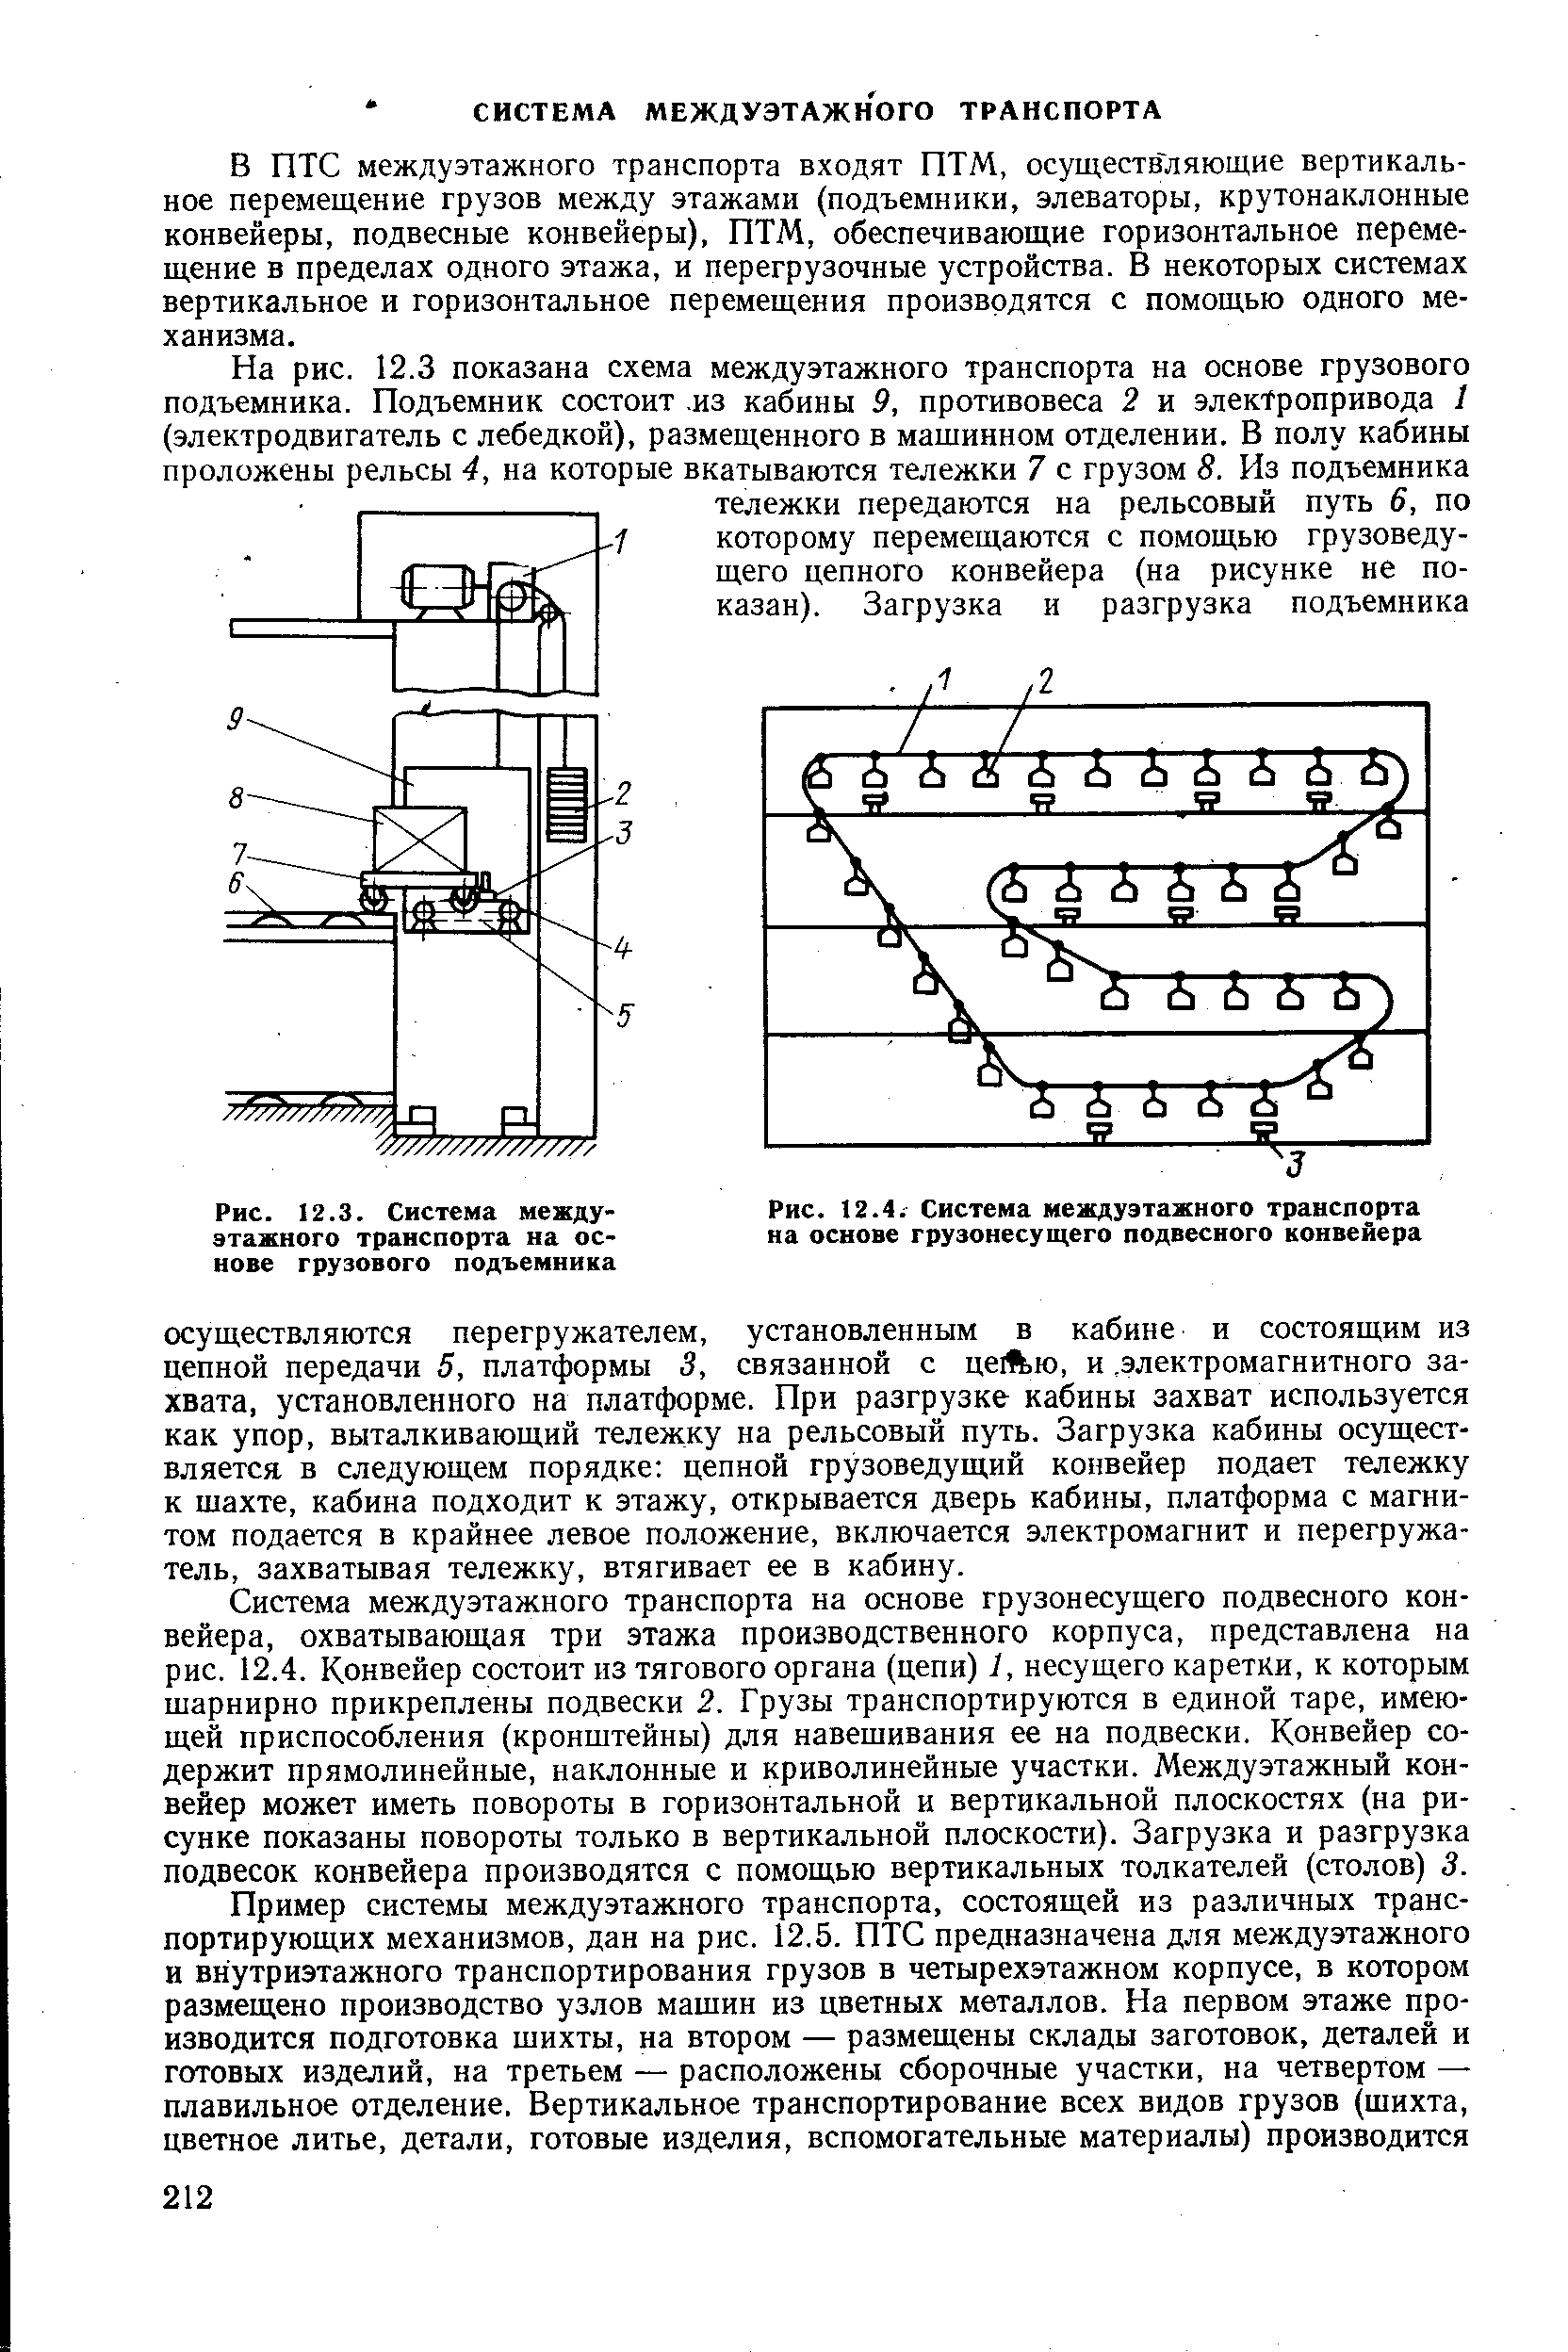 Рис. 12.4 Система междуэтажного транспорта на основе <a href="/info/220363">грузонесущего подвесного</a> конвейера
